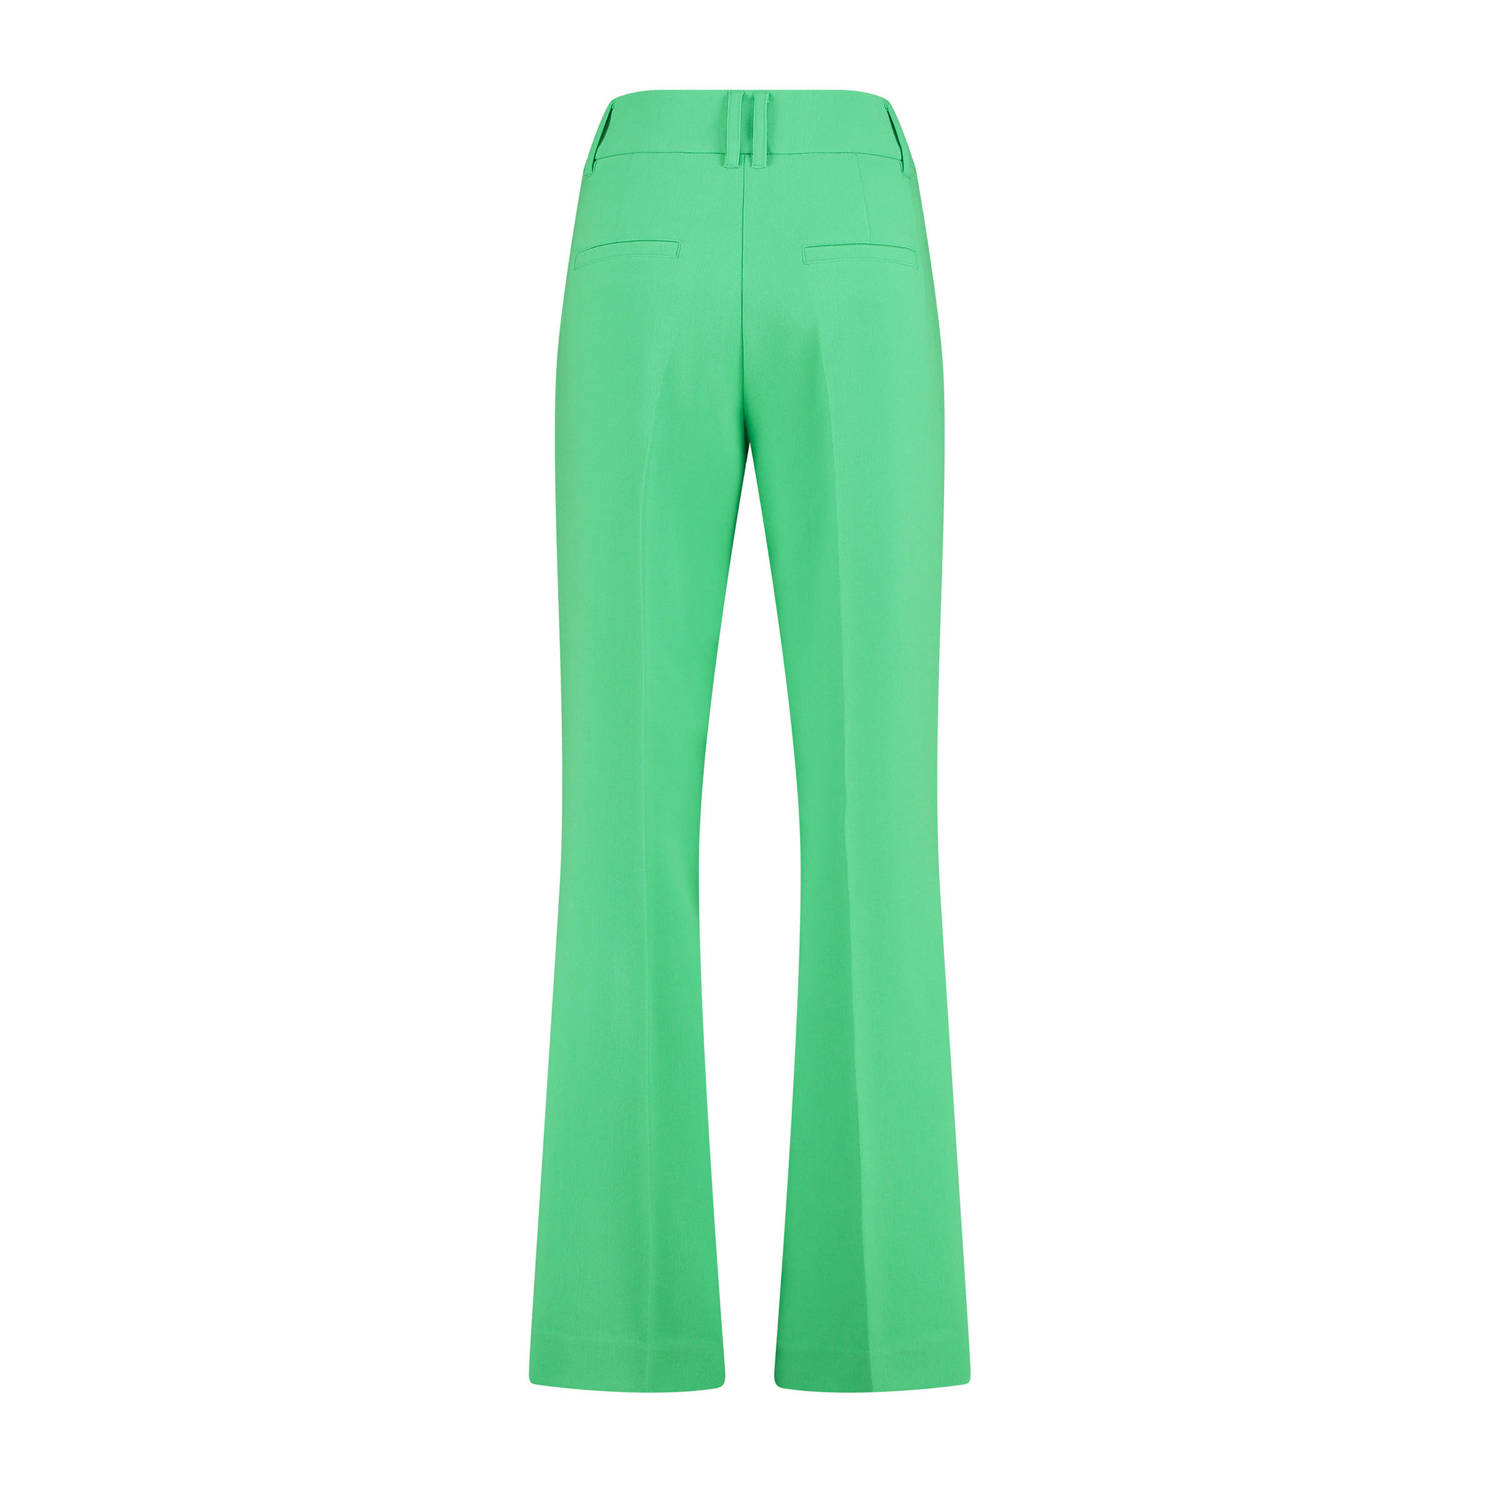 Expresso wide leg pantalon groen